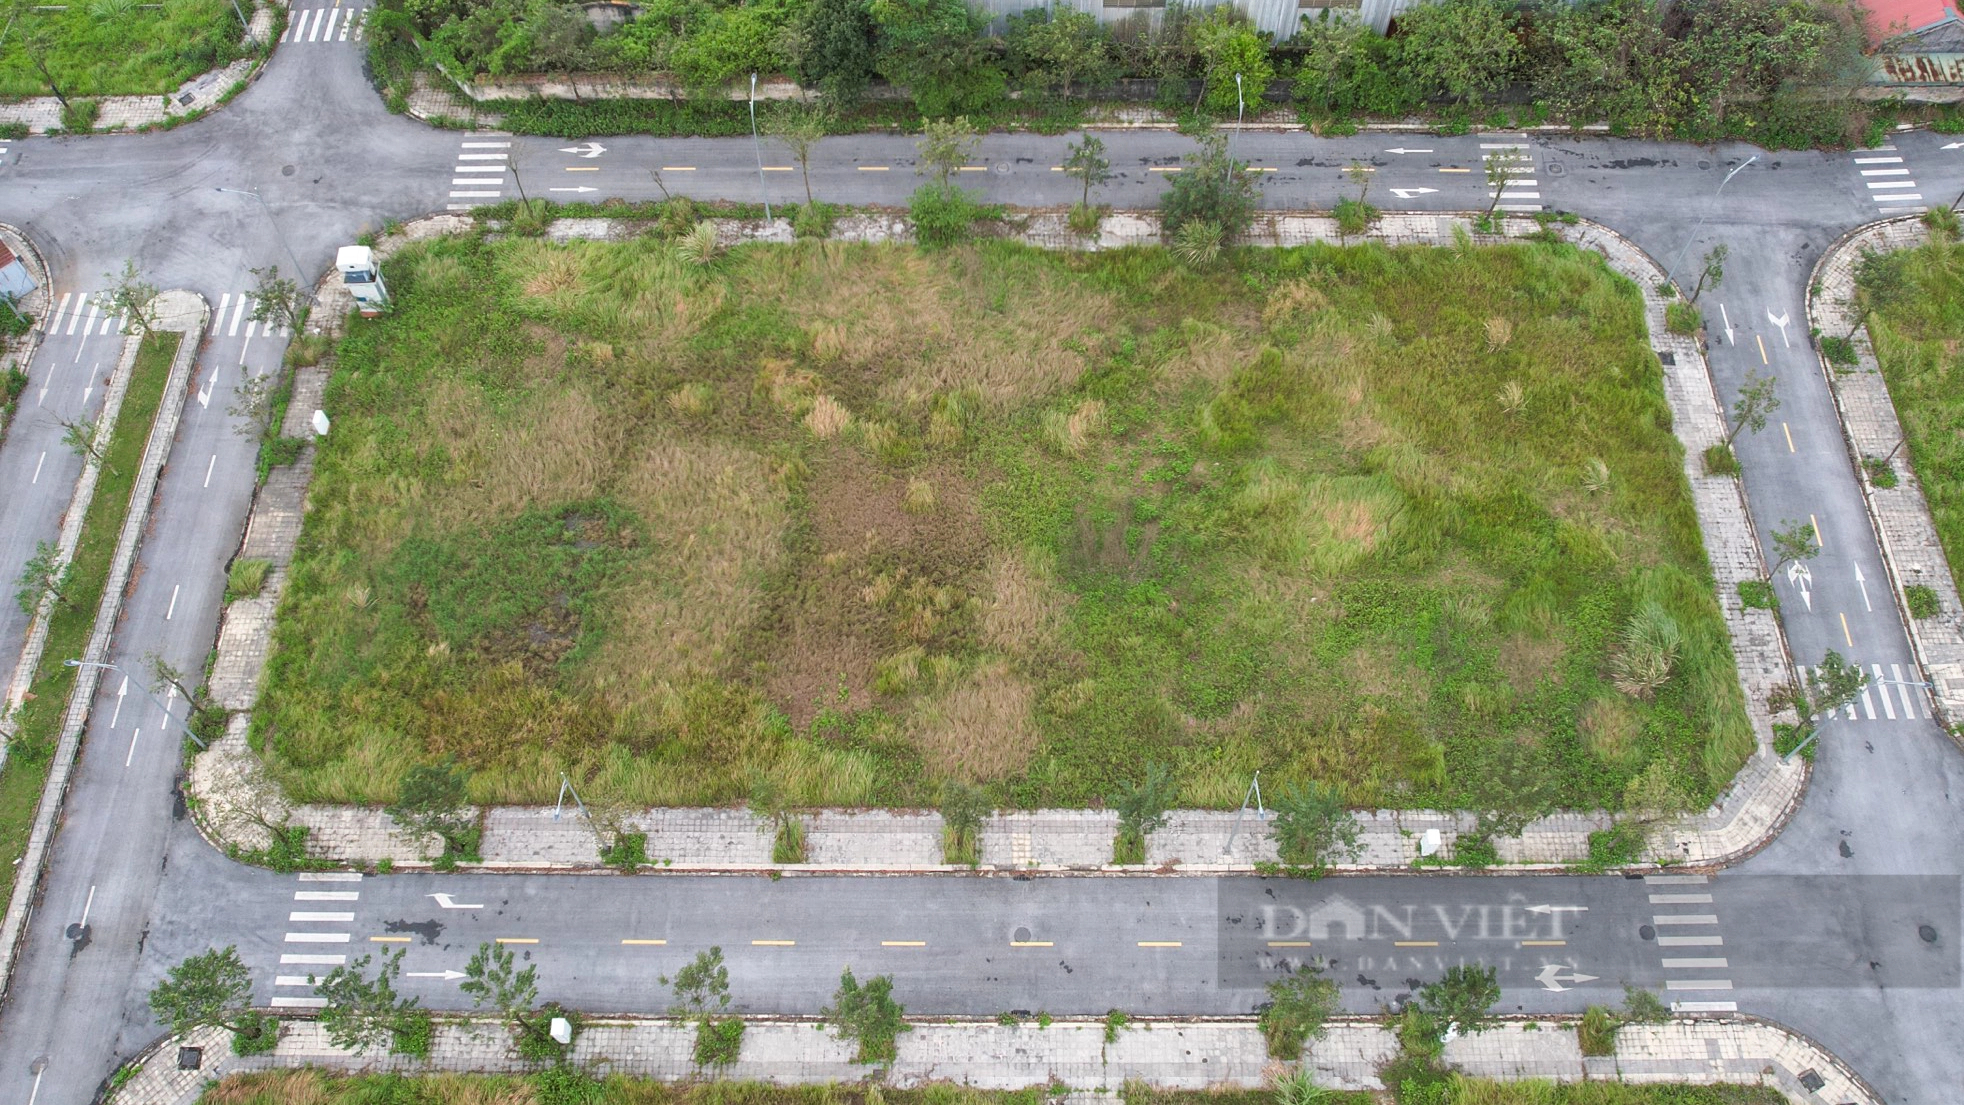 Hiện trạng khu đất rộng hơn 16.000 m2 vừa bị Hà Nội hủy kết quả trúng đấu giá- Ảnh 5.